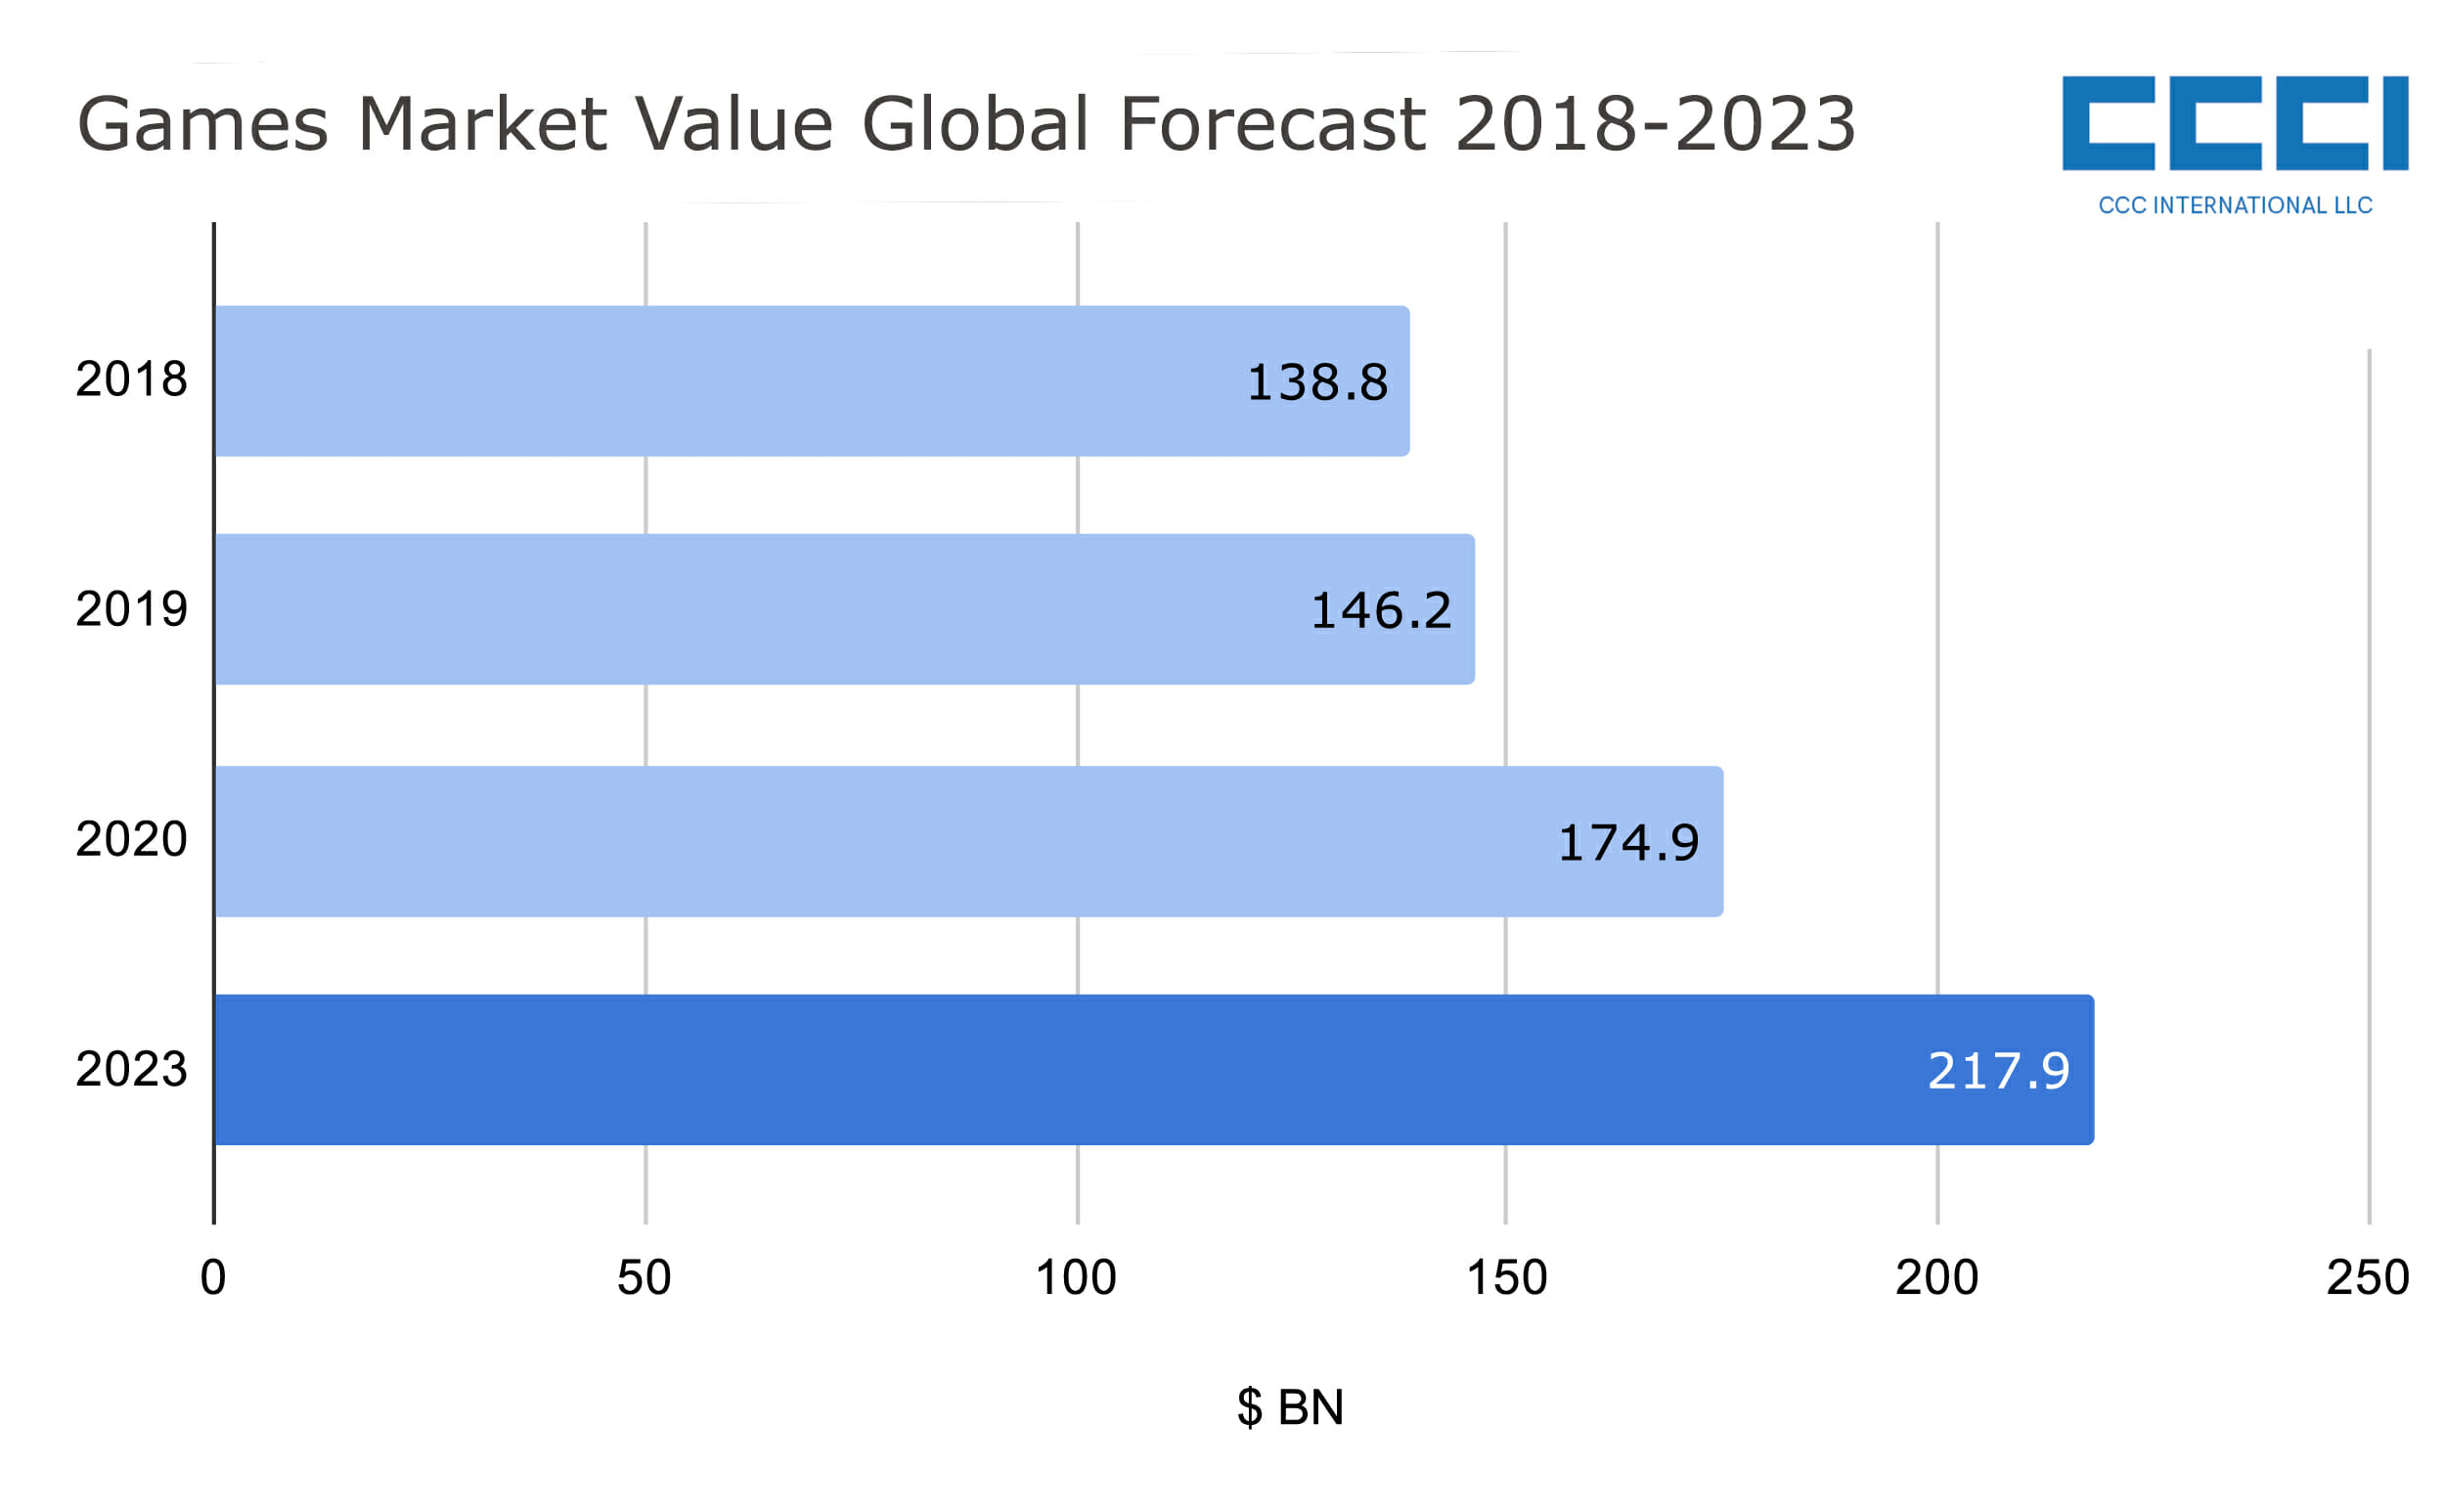 Global Games Market Forecast 2018-2023.